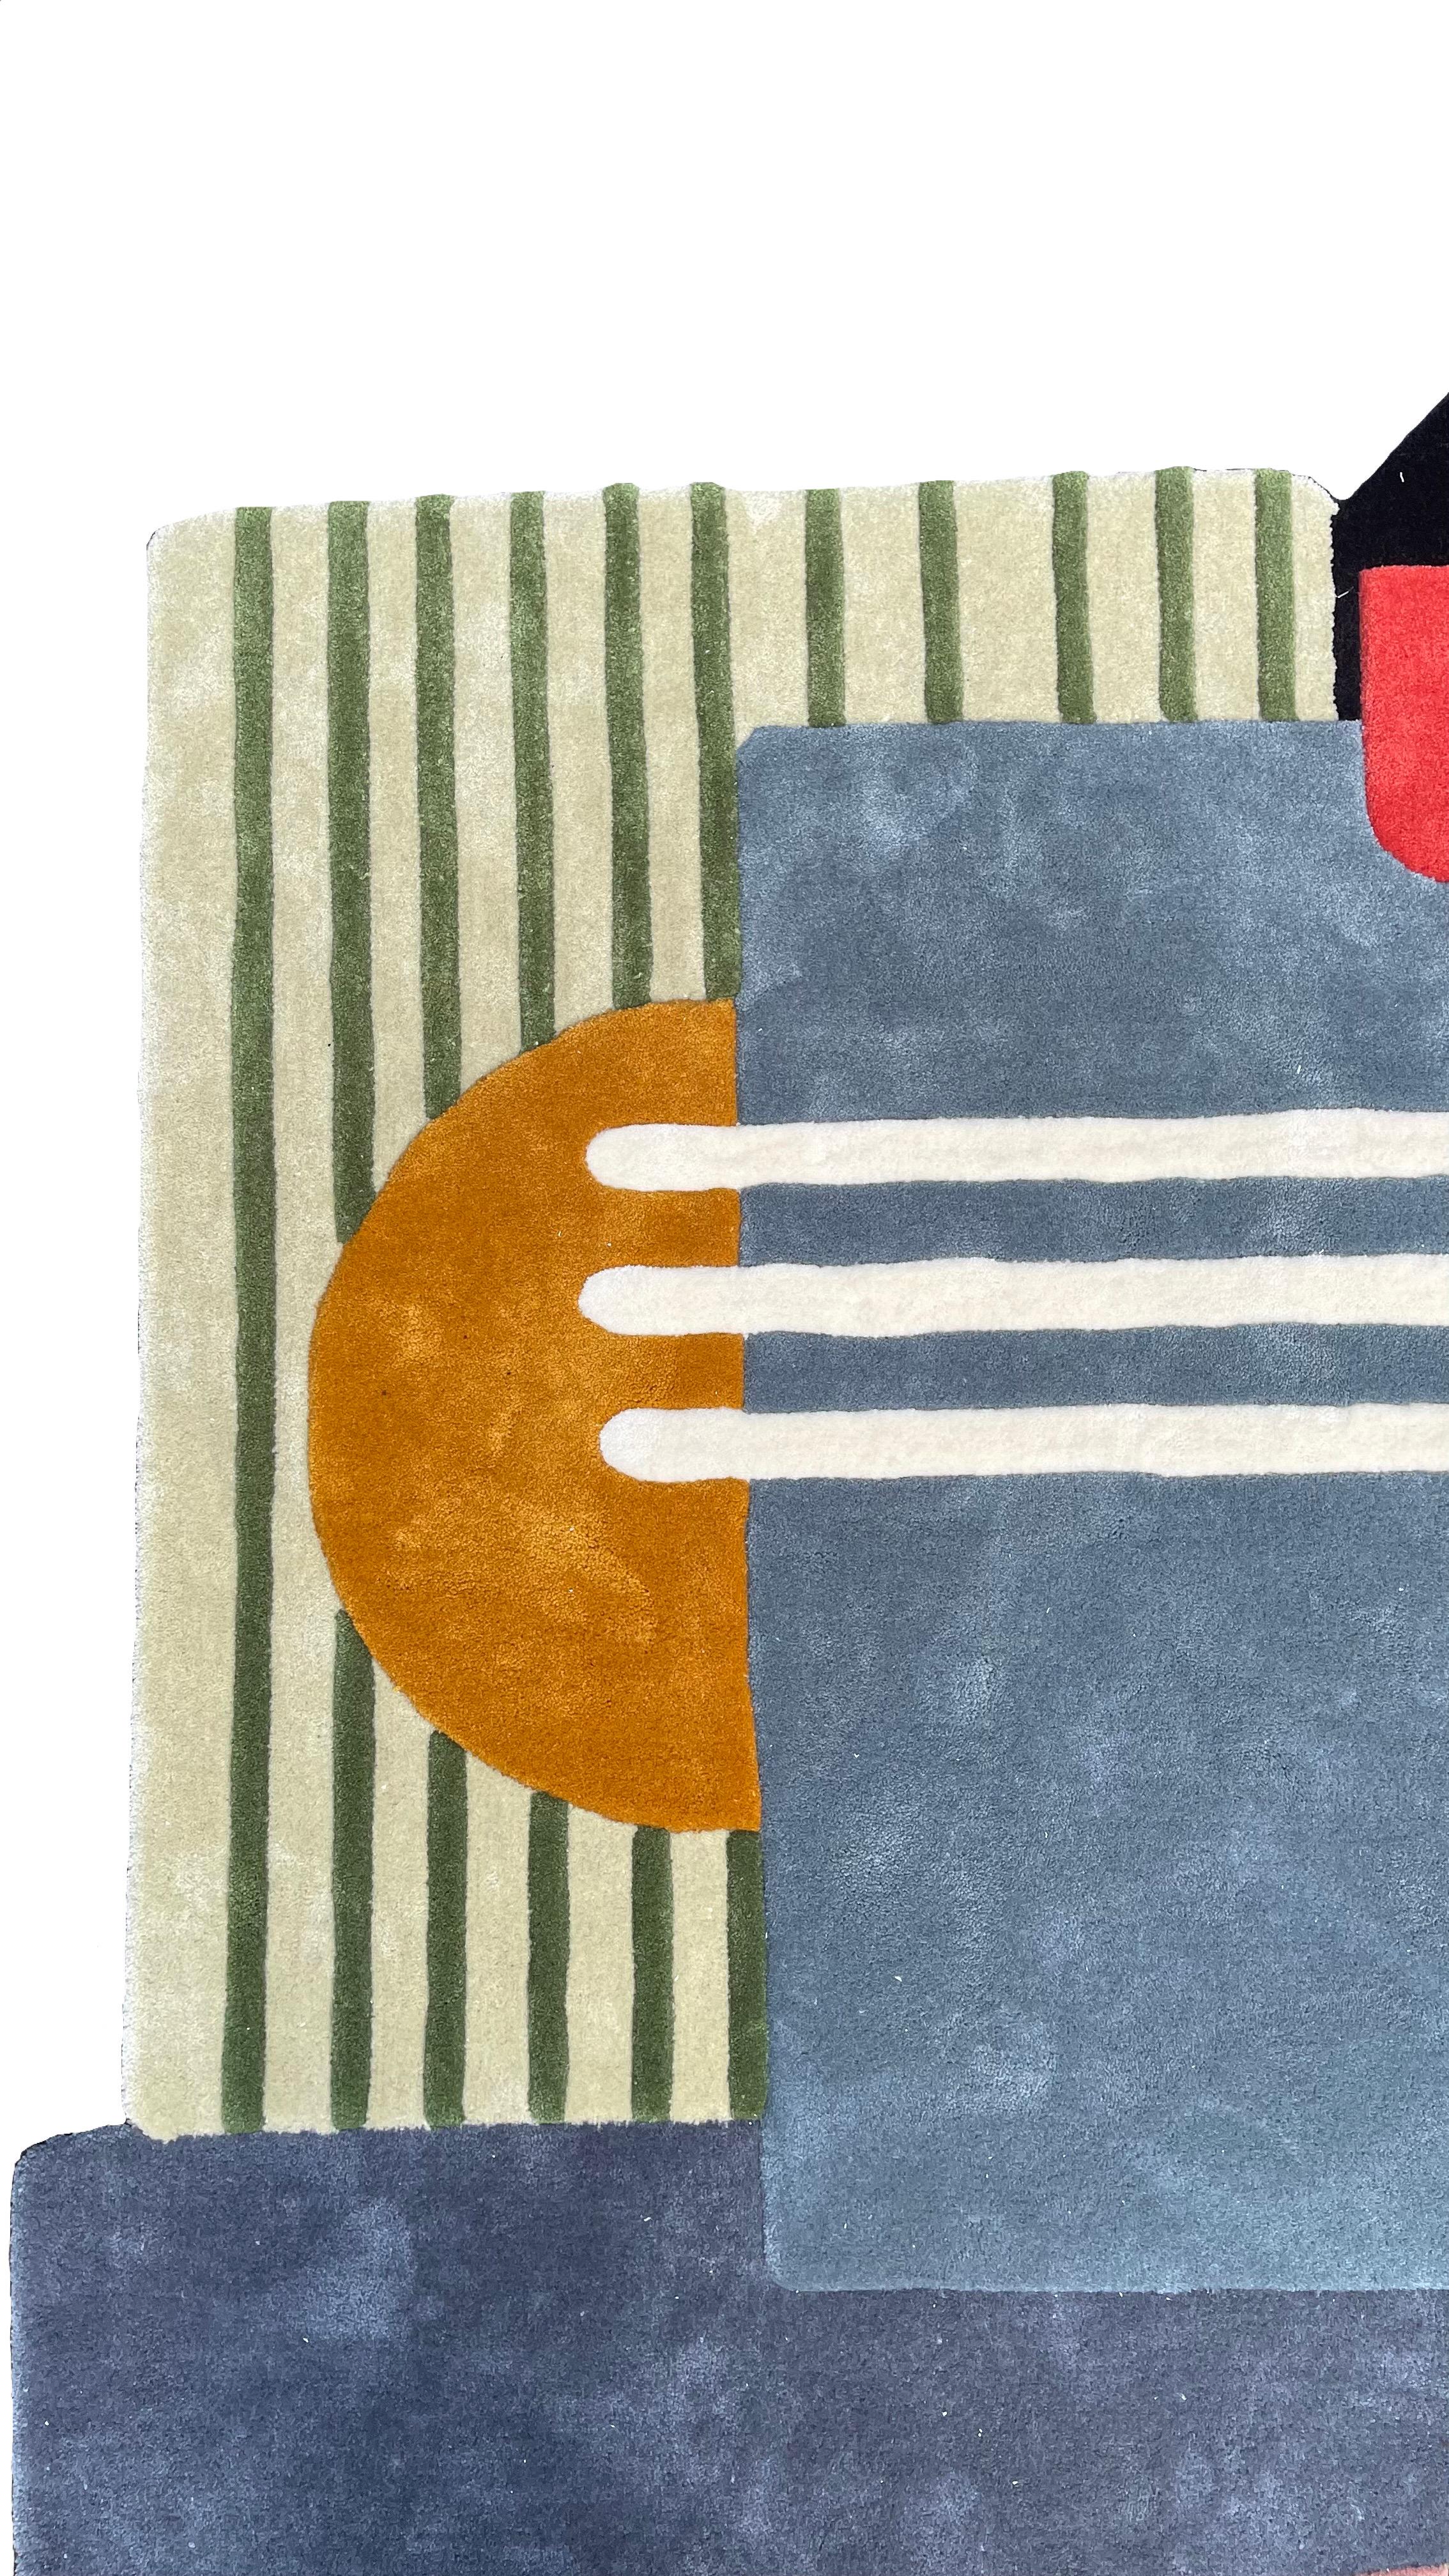 Moderner Teppich in unregelmäßiger Form 'Dancing Dimension' von RAG

Original entworfen von Rannisa Soraya RAG Home Jakarta
Handgetuftet mit gemischten Schnitzereien, geprägten Methoden und Farben. Auf Wunsch kann er in Größe und Zusammensetzung